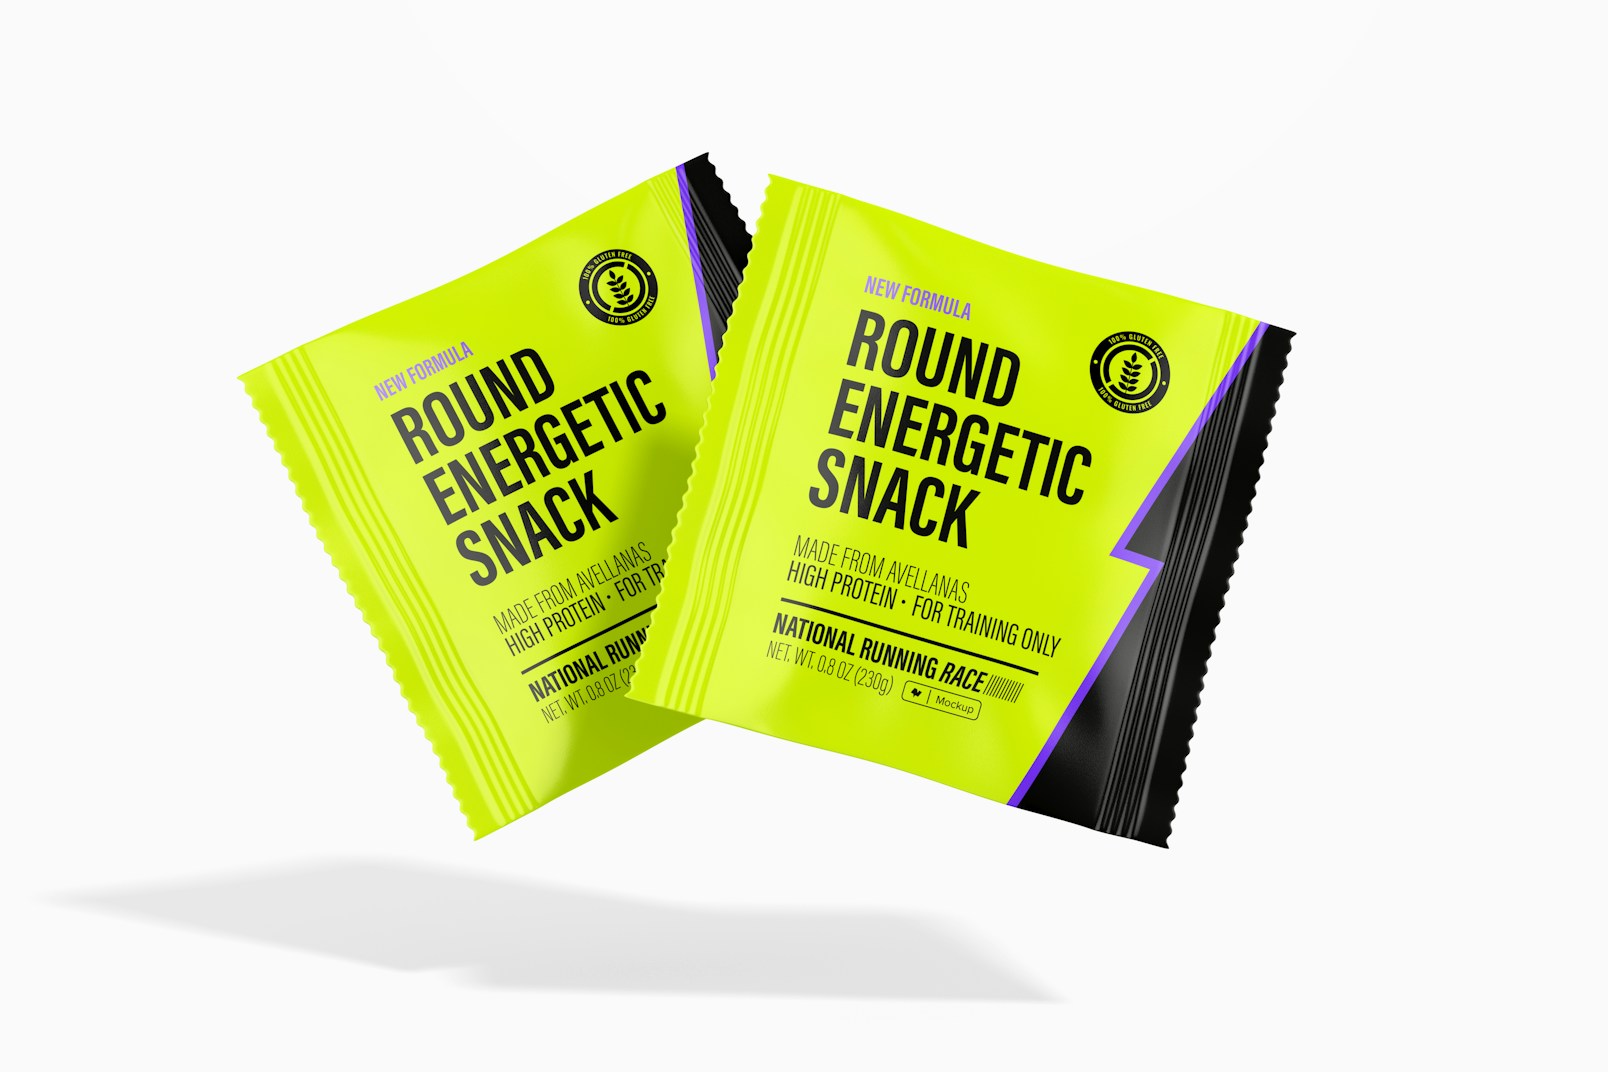 Round Energetic Snacks Packaging Mockup, Floating